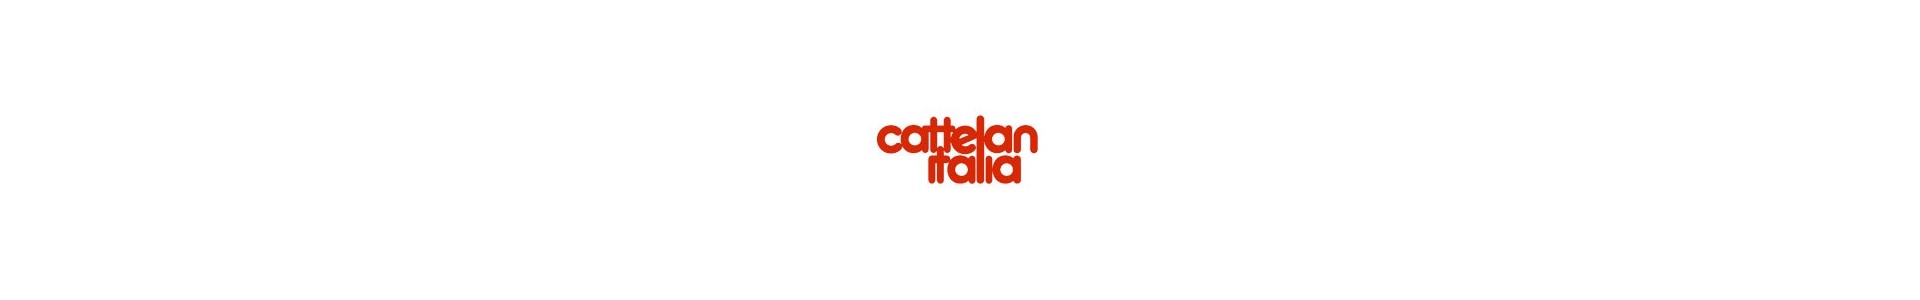 Cattelan Italia. Catálogo de Mesas, Sillas, Complentos de lujo.  Muebles Lluesma